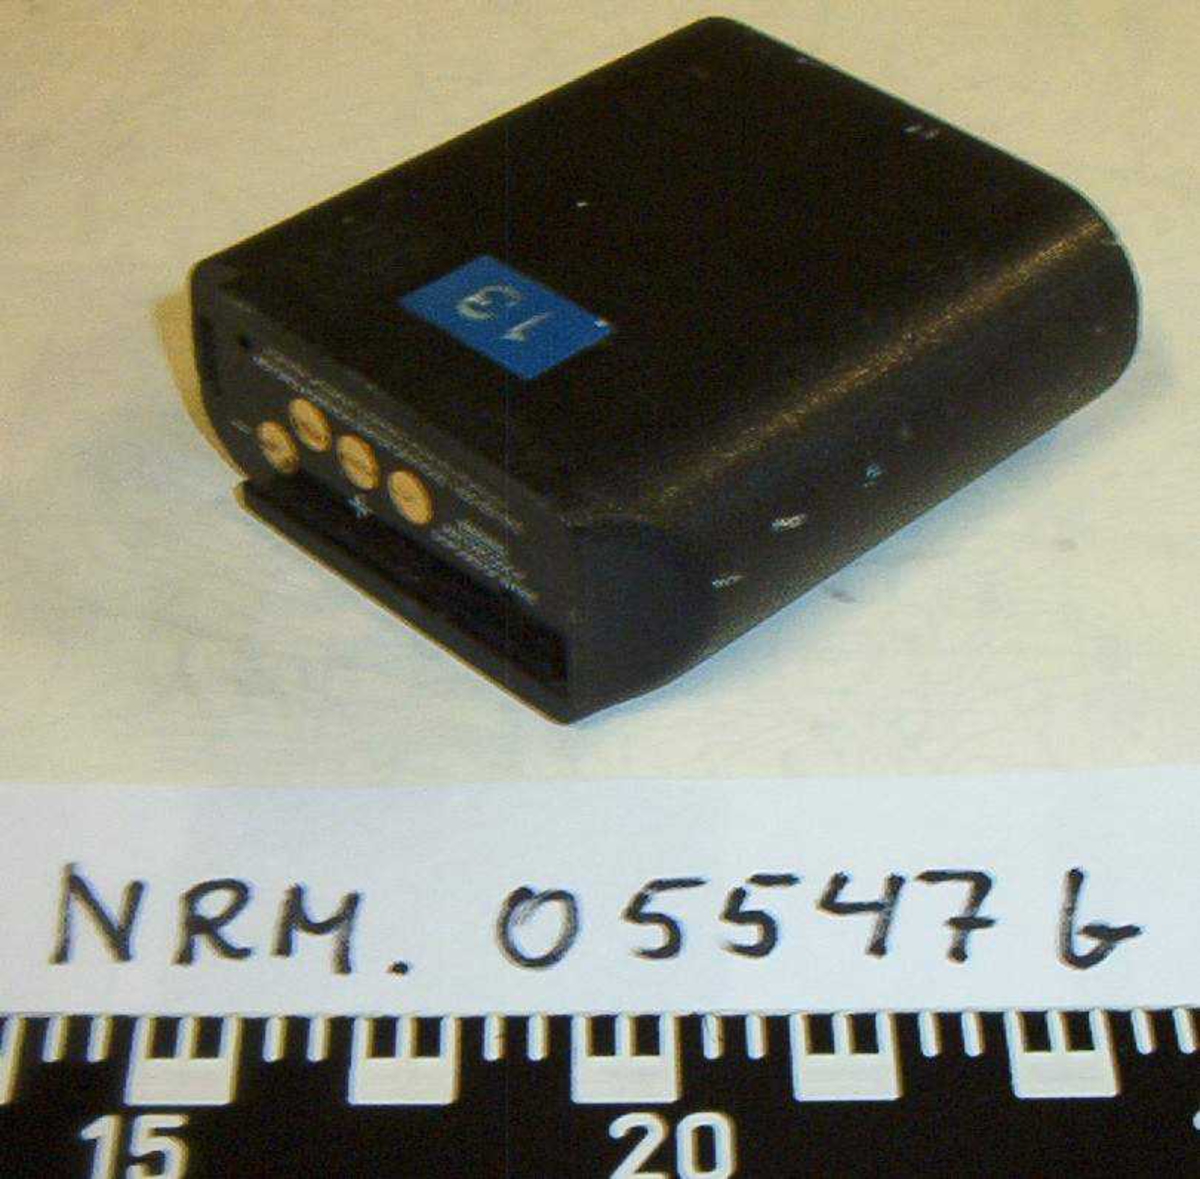 NRM.05547a:
Monofor Telsy TS 520 G  -  3091
Codes: 0 Crypto 0
            1 Crypto 1
            2 Crypto 2
            3 Crypto 3
            9 Clear
Klar tale  - stilling 9
Velg riktig kode 1 - 3
Synkronisering 5 sek., etter 10 min. pause
Batterilading: Bruk monofonen 5t/måned
Ta vare på monofonen

NRM.05547b:
Batteri merket: 13 på blå tape

NRM.05547c:
Batterilader Ericsson Type 4227 - med løst batteri Ericsson Type 3009,
med ledning / kontakt.